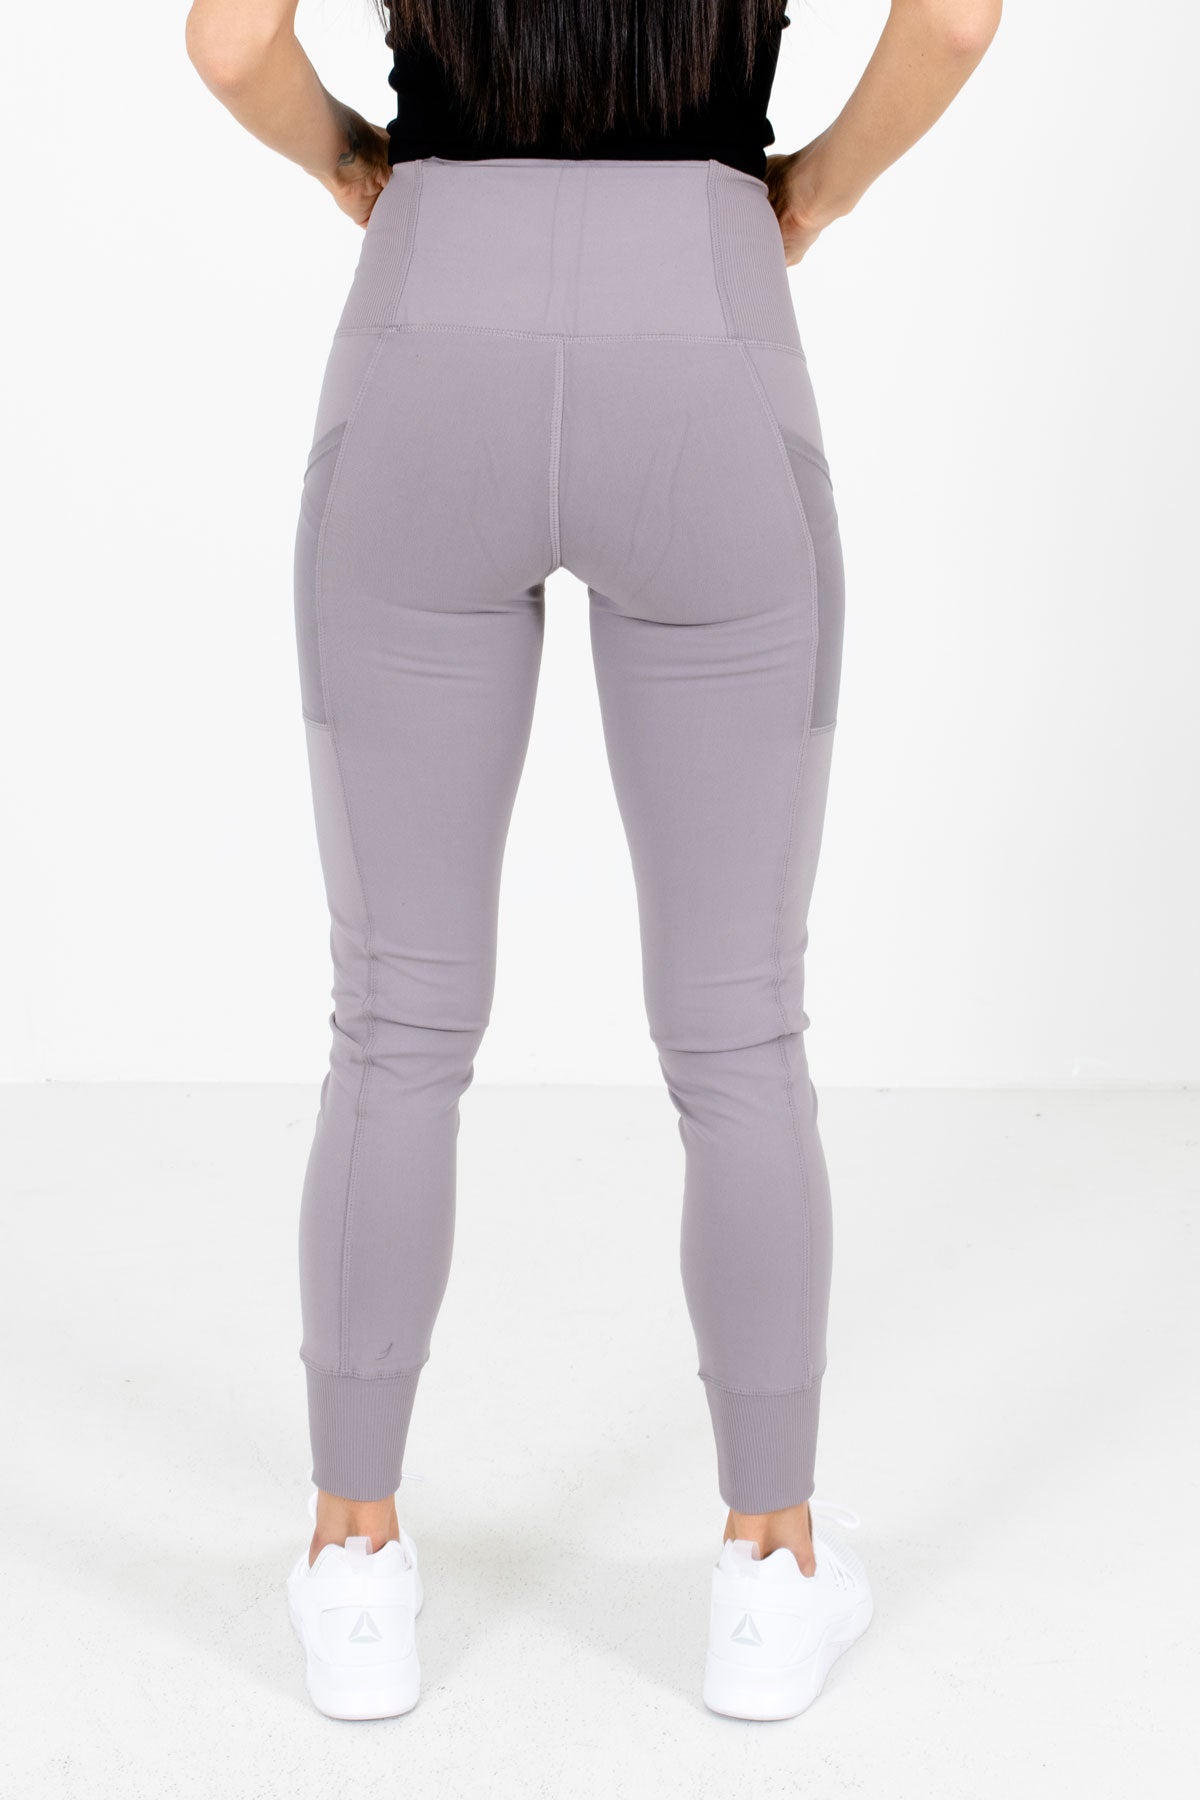 Women’s Dusty Purple Jogger Style Boutique Active Leggings